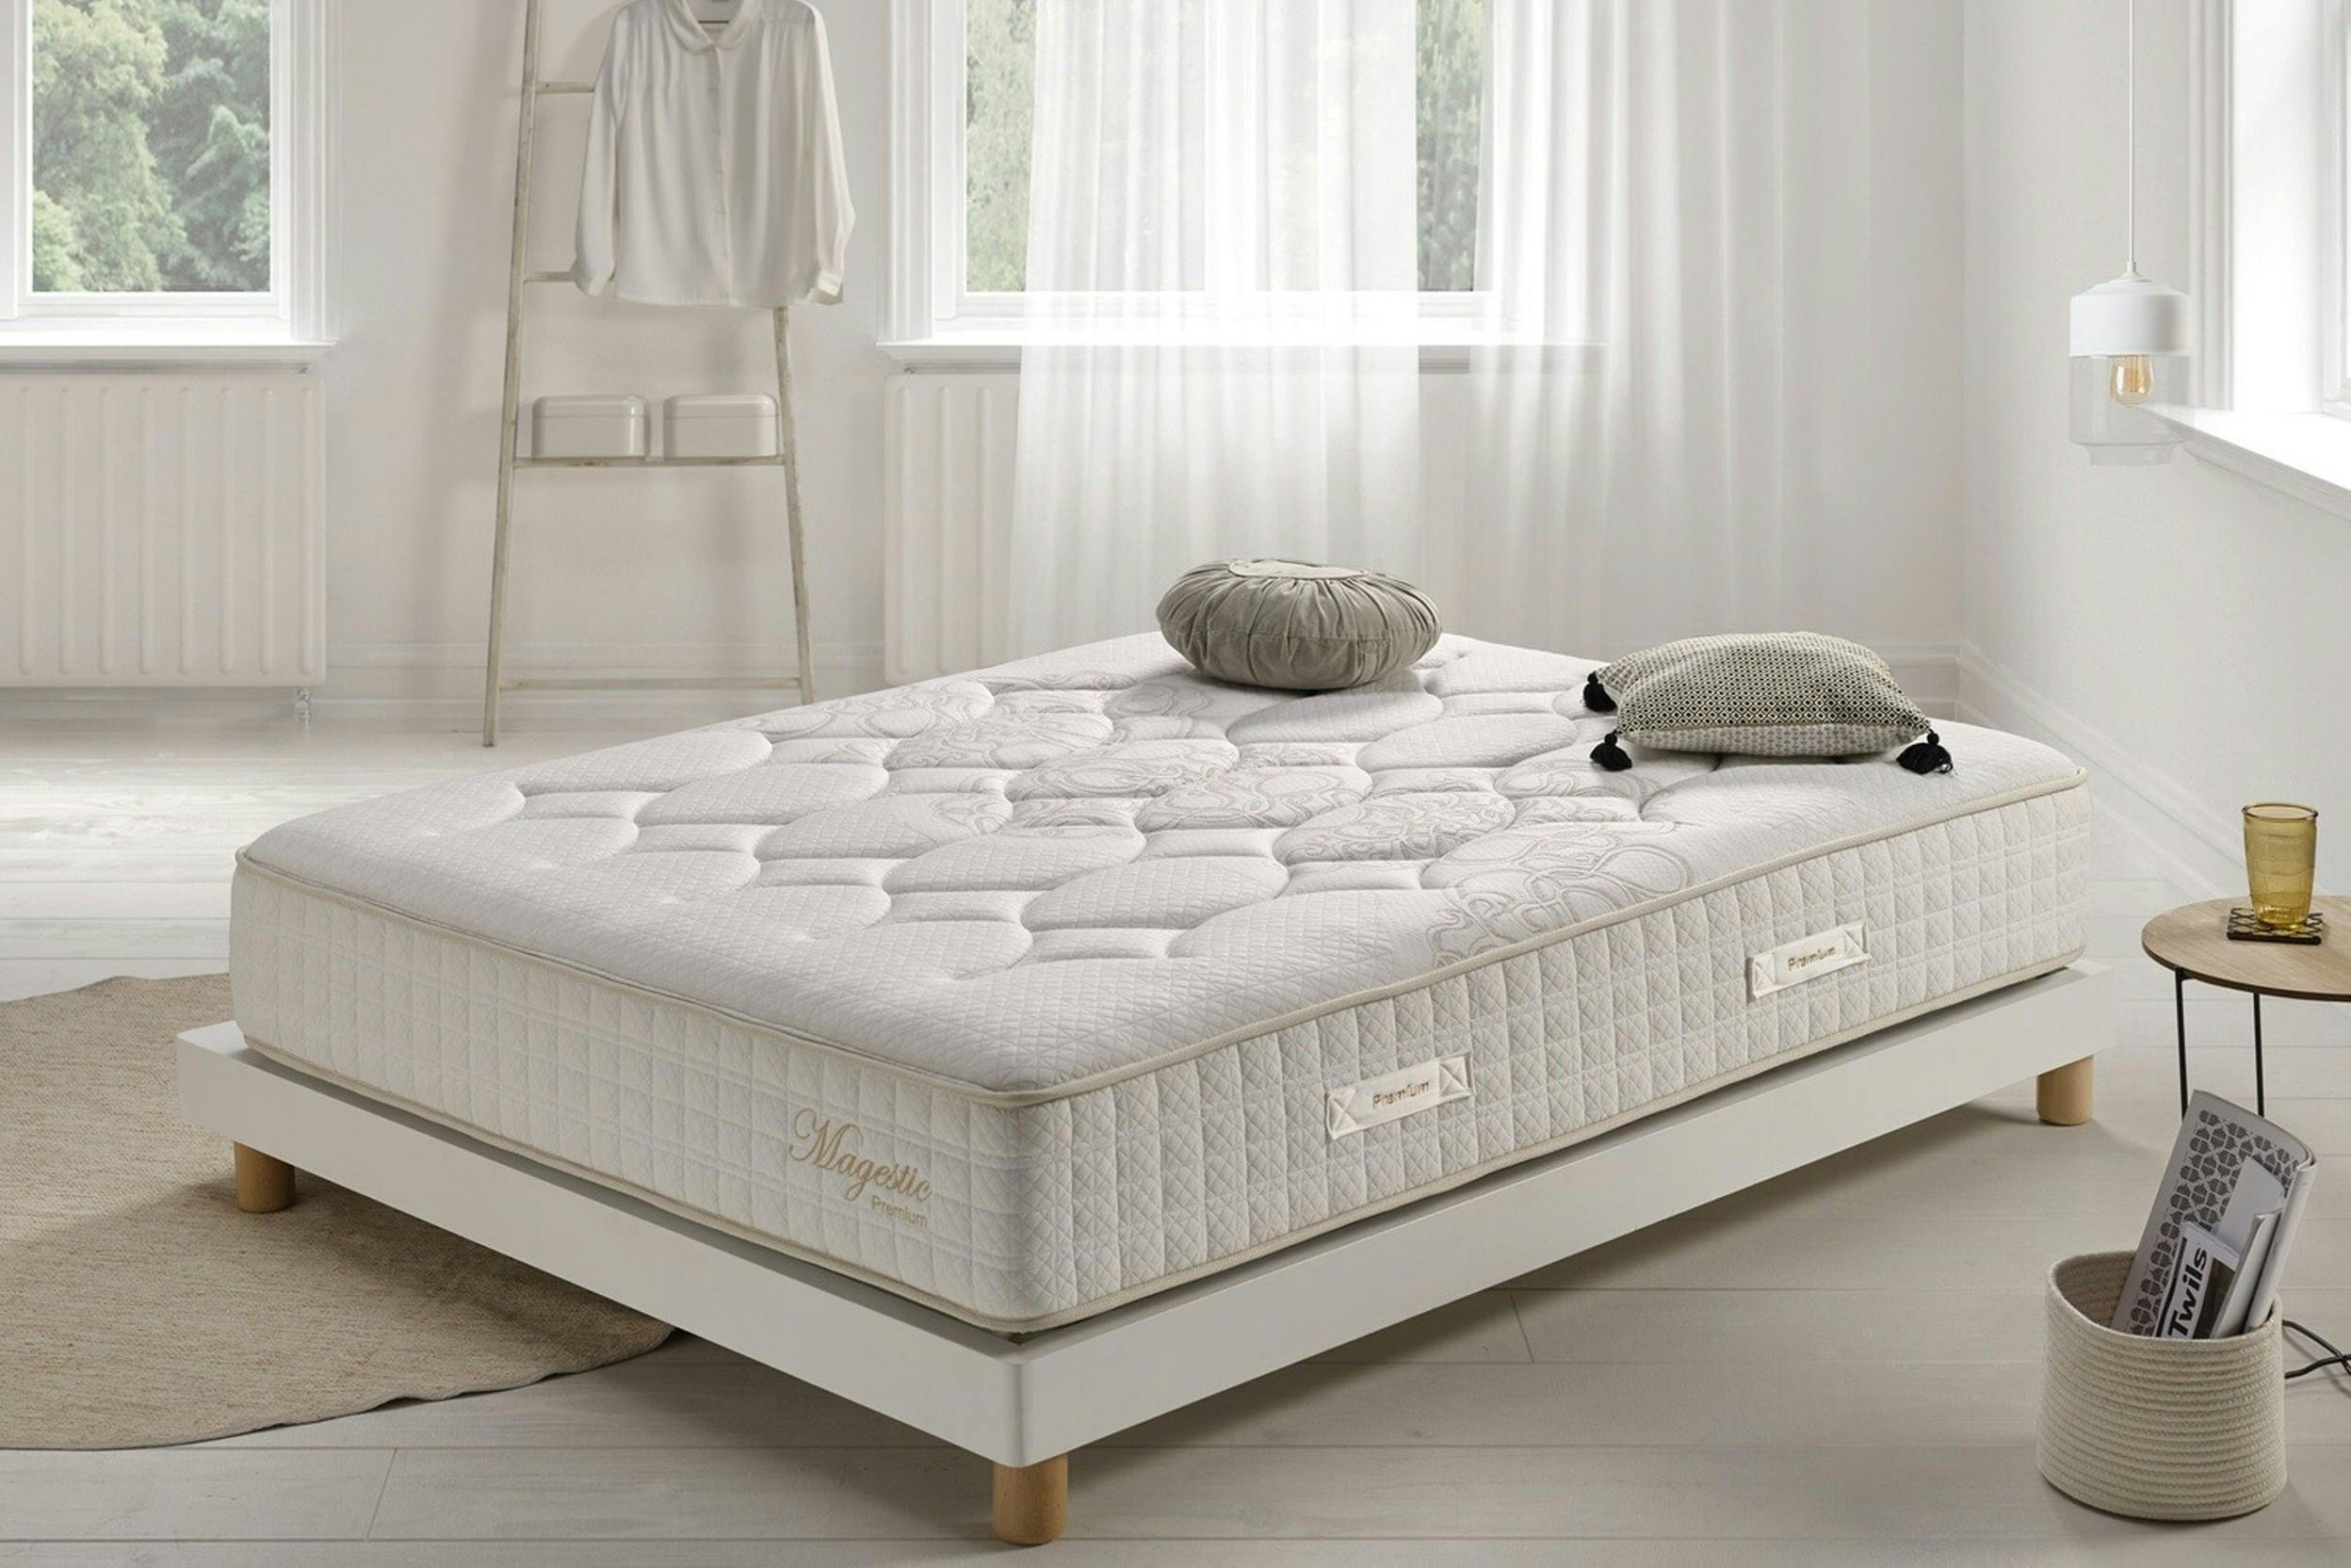 Lichte slaapkamer met onopgemaakt bed, erg dik matras en decoratieve kussens.